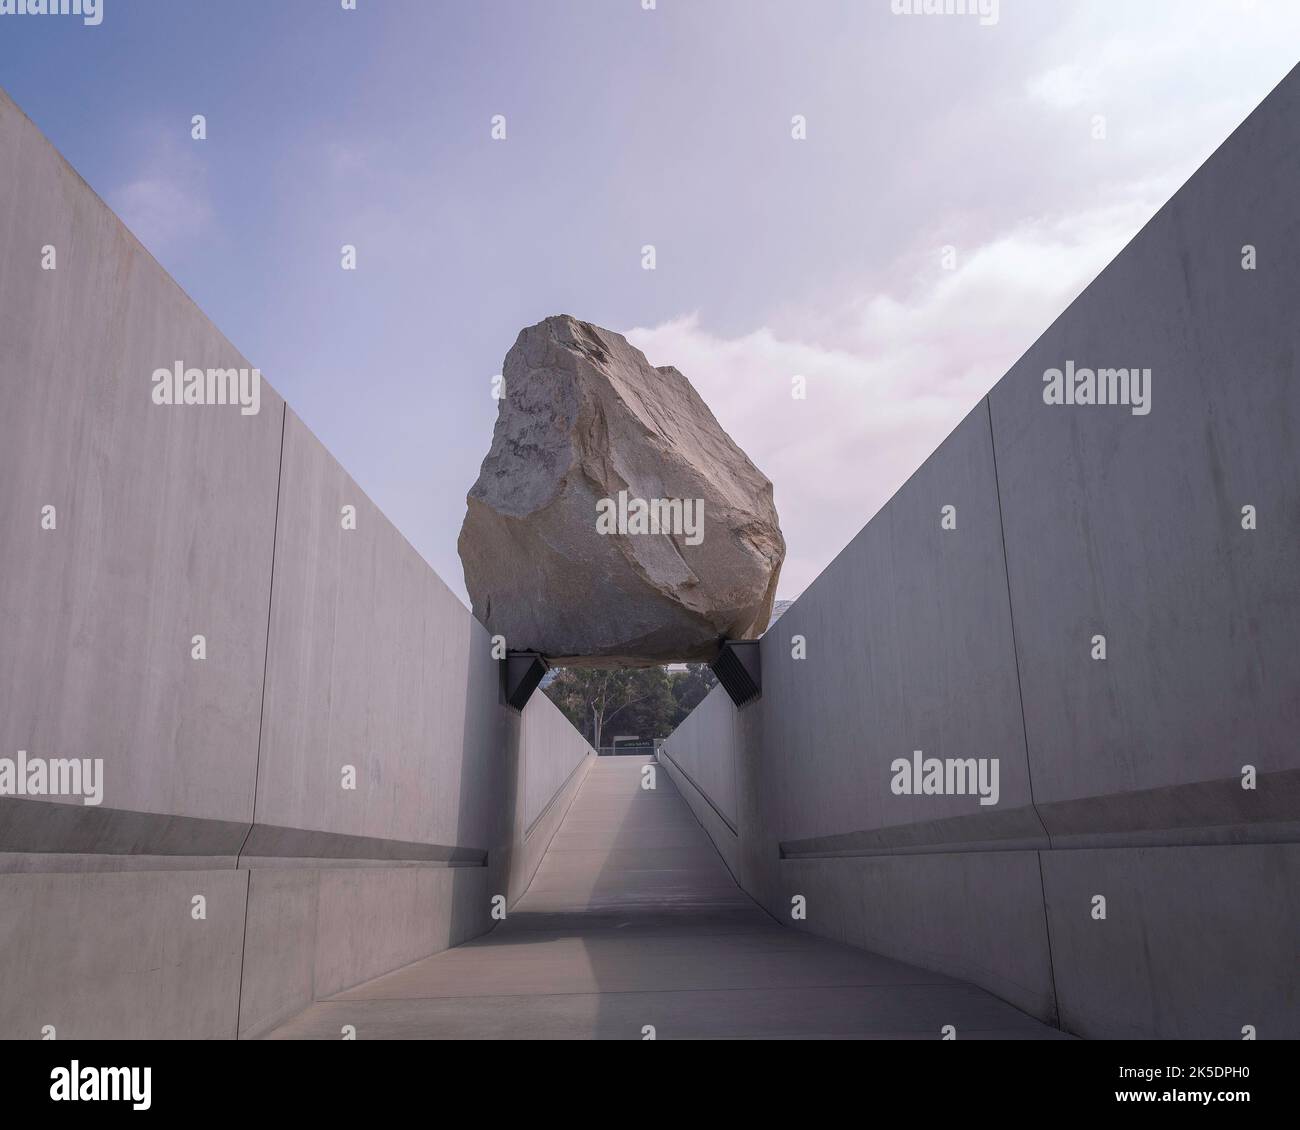 Los Angeles, CA, USA - 6 ottobre 2022: Al LACMA di Los Angeles, CA, è esposta la scultura pubblica d'arte "Messa levitata" dell'artista Michael Heizer. Foto Stock